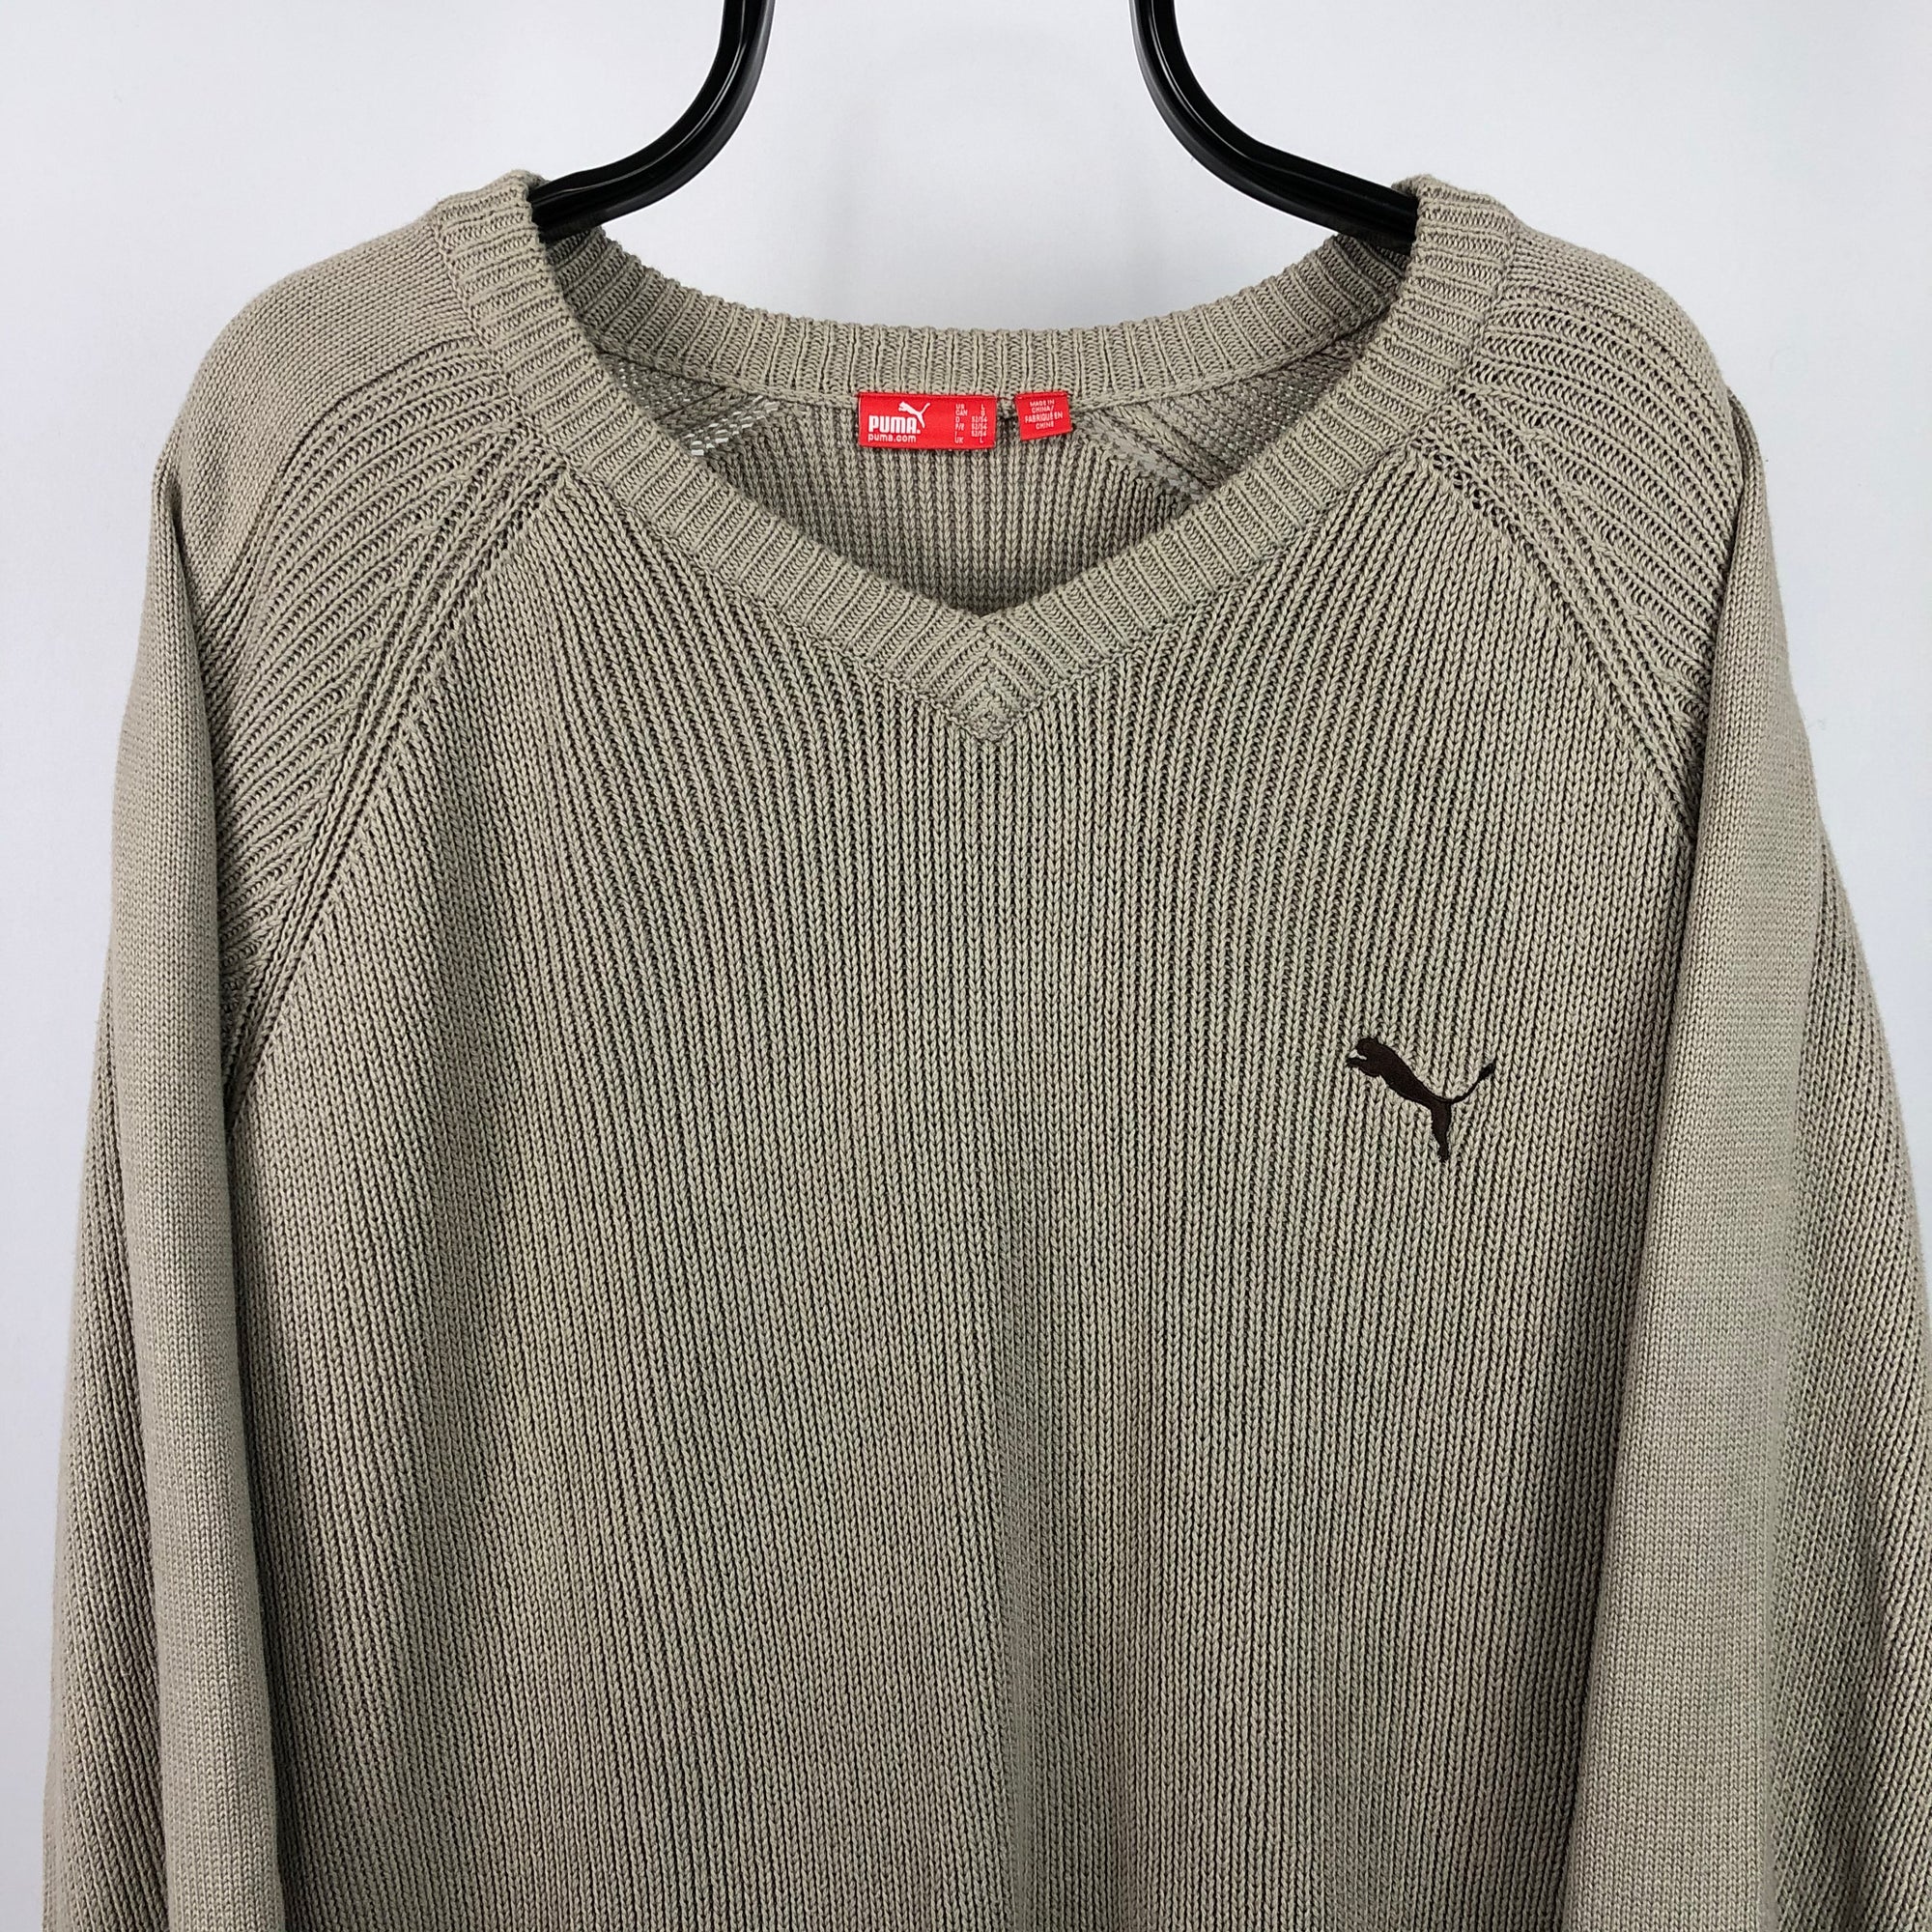 Puma Knit Sweater in Beige - Men's XL/Women's XXL